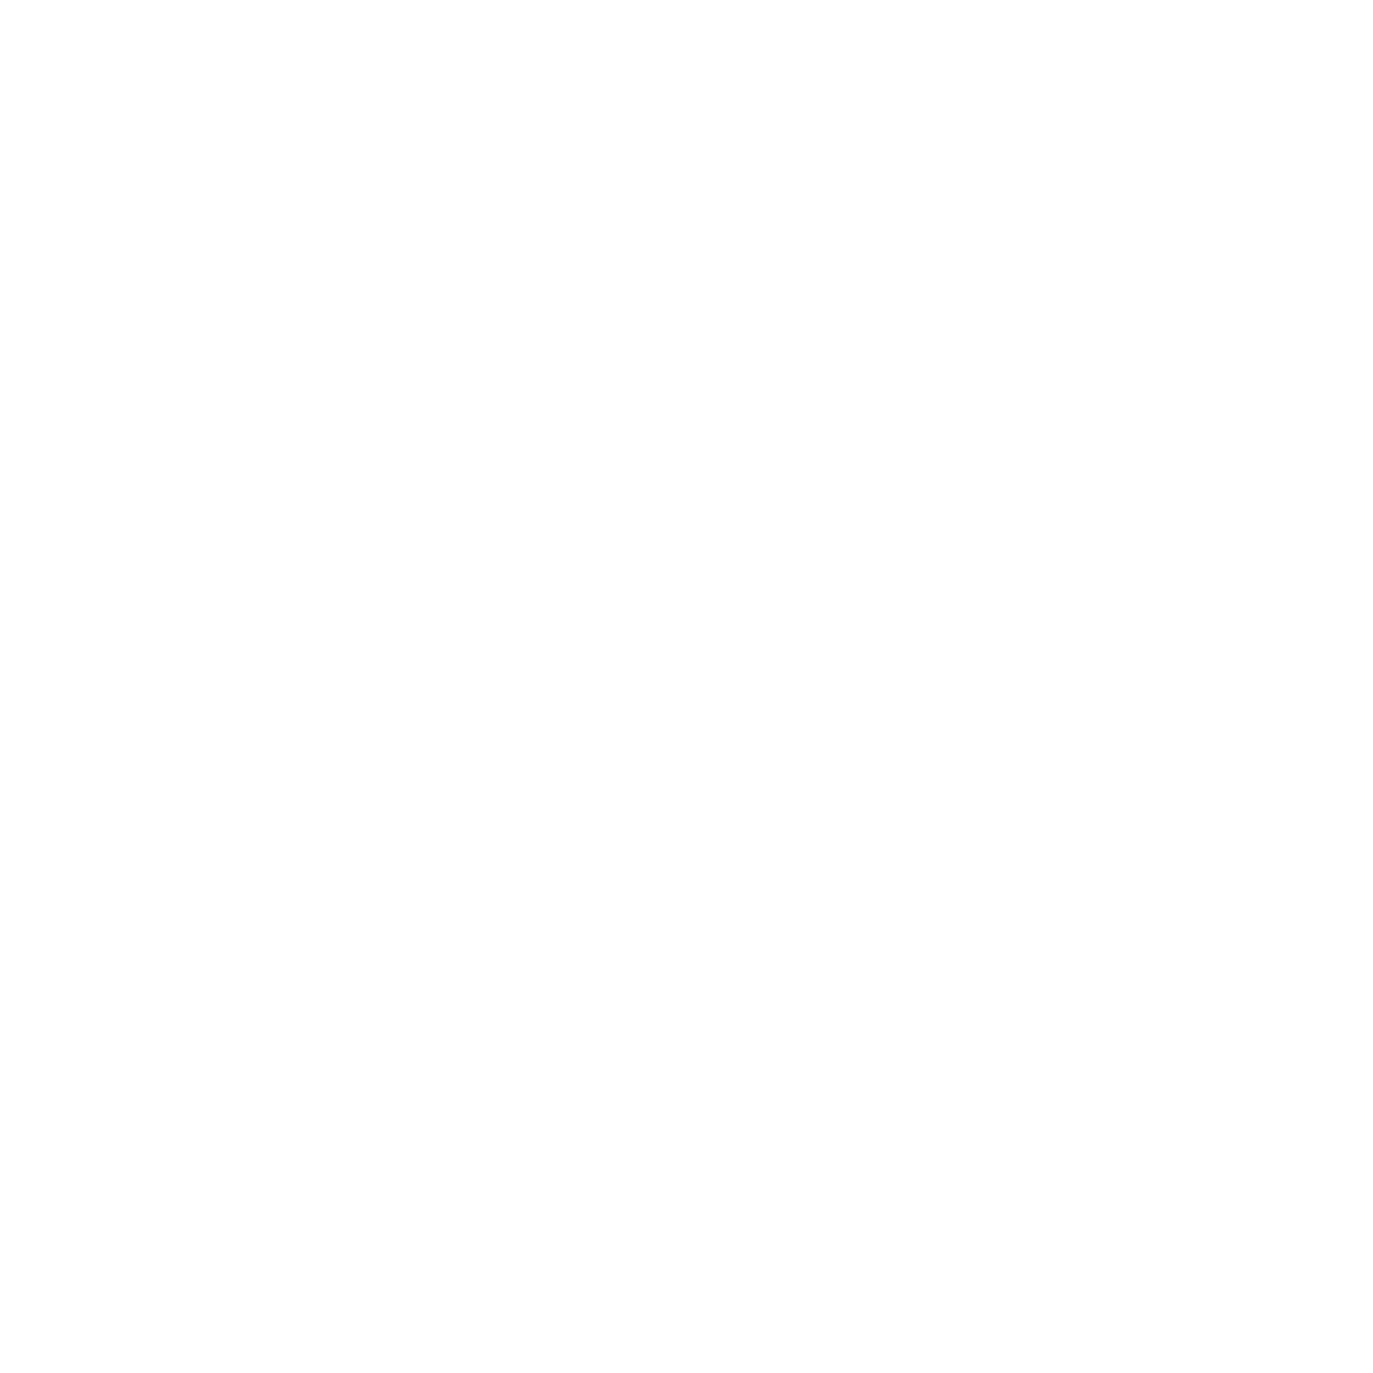 w69th - HacksawGaming